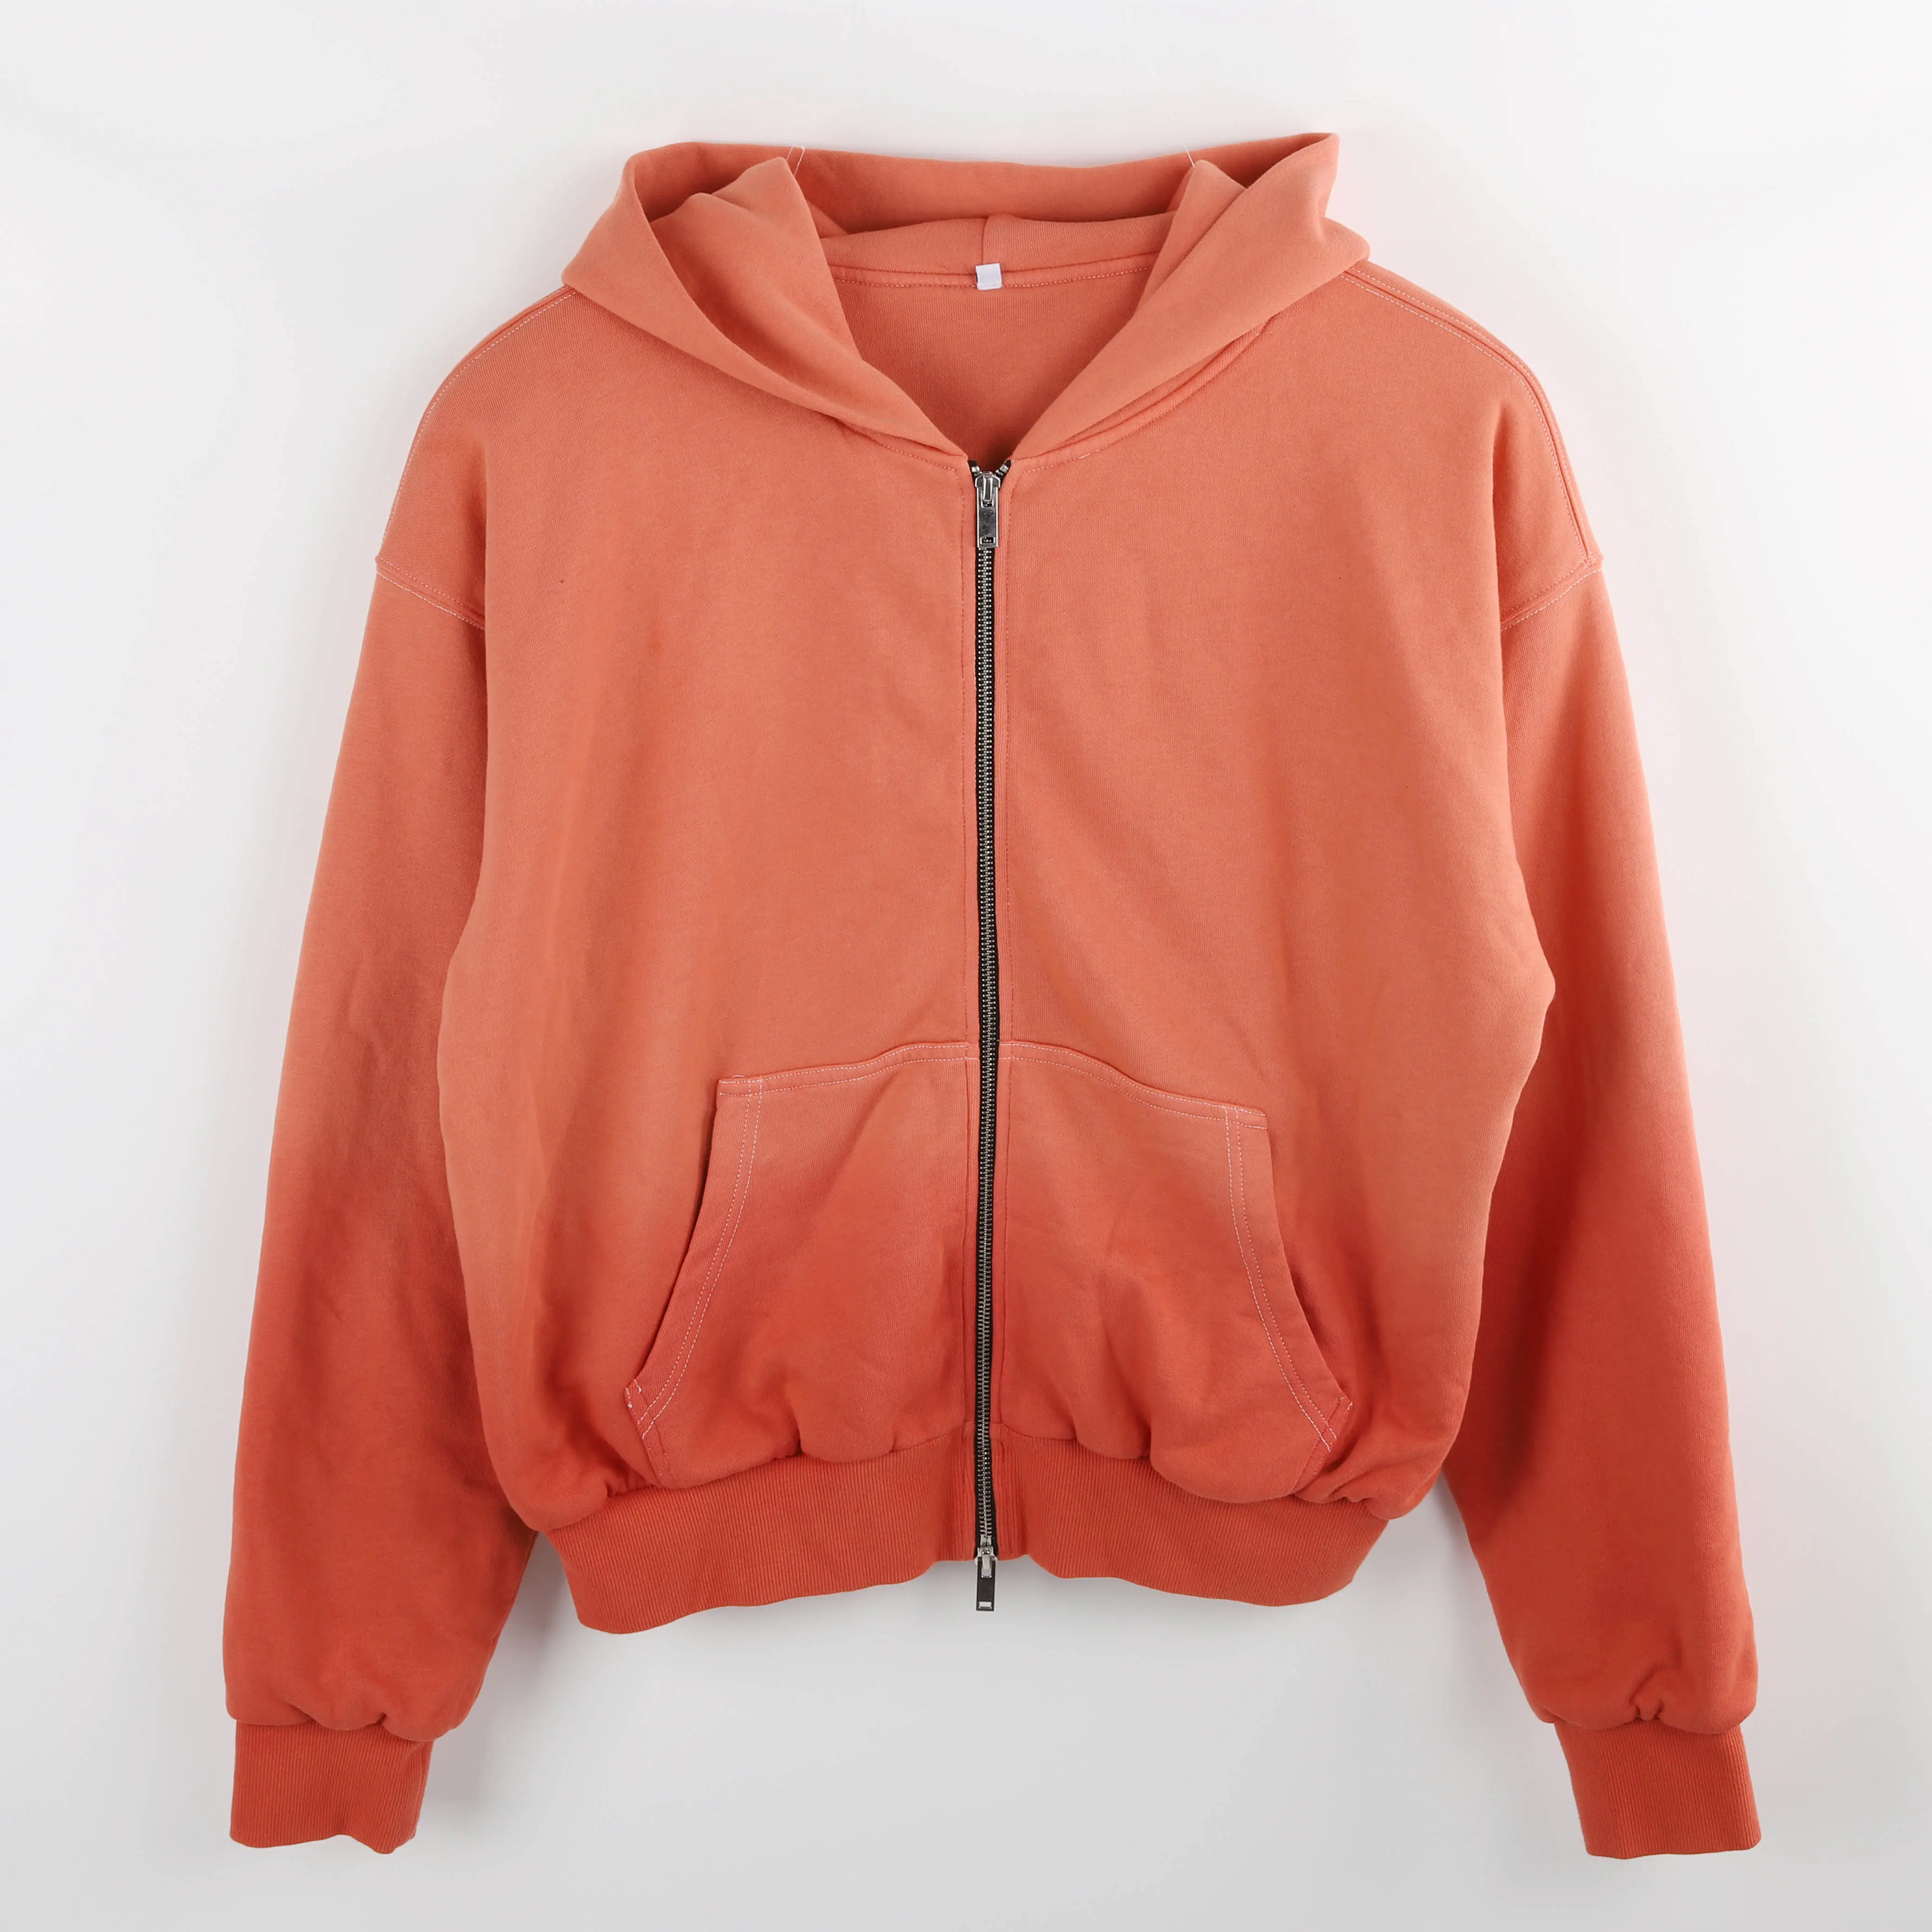 Sudadera con capucha para hombre y mujer, prenda deportiva Unisex de lana con cremallera y Logo personalizado, color rojo, liso, con degradado, doble capa